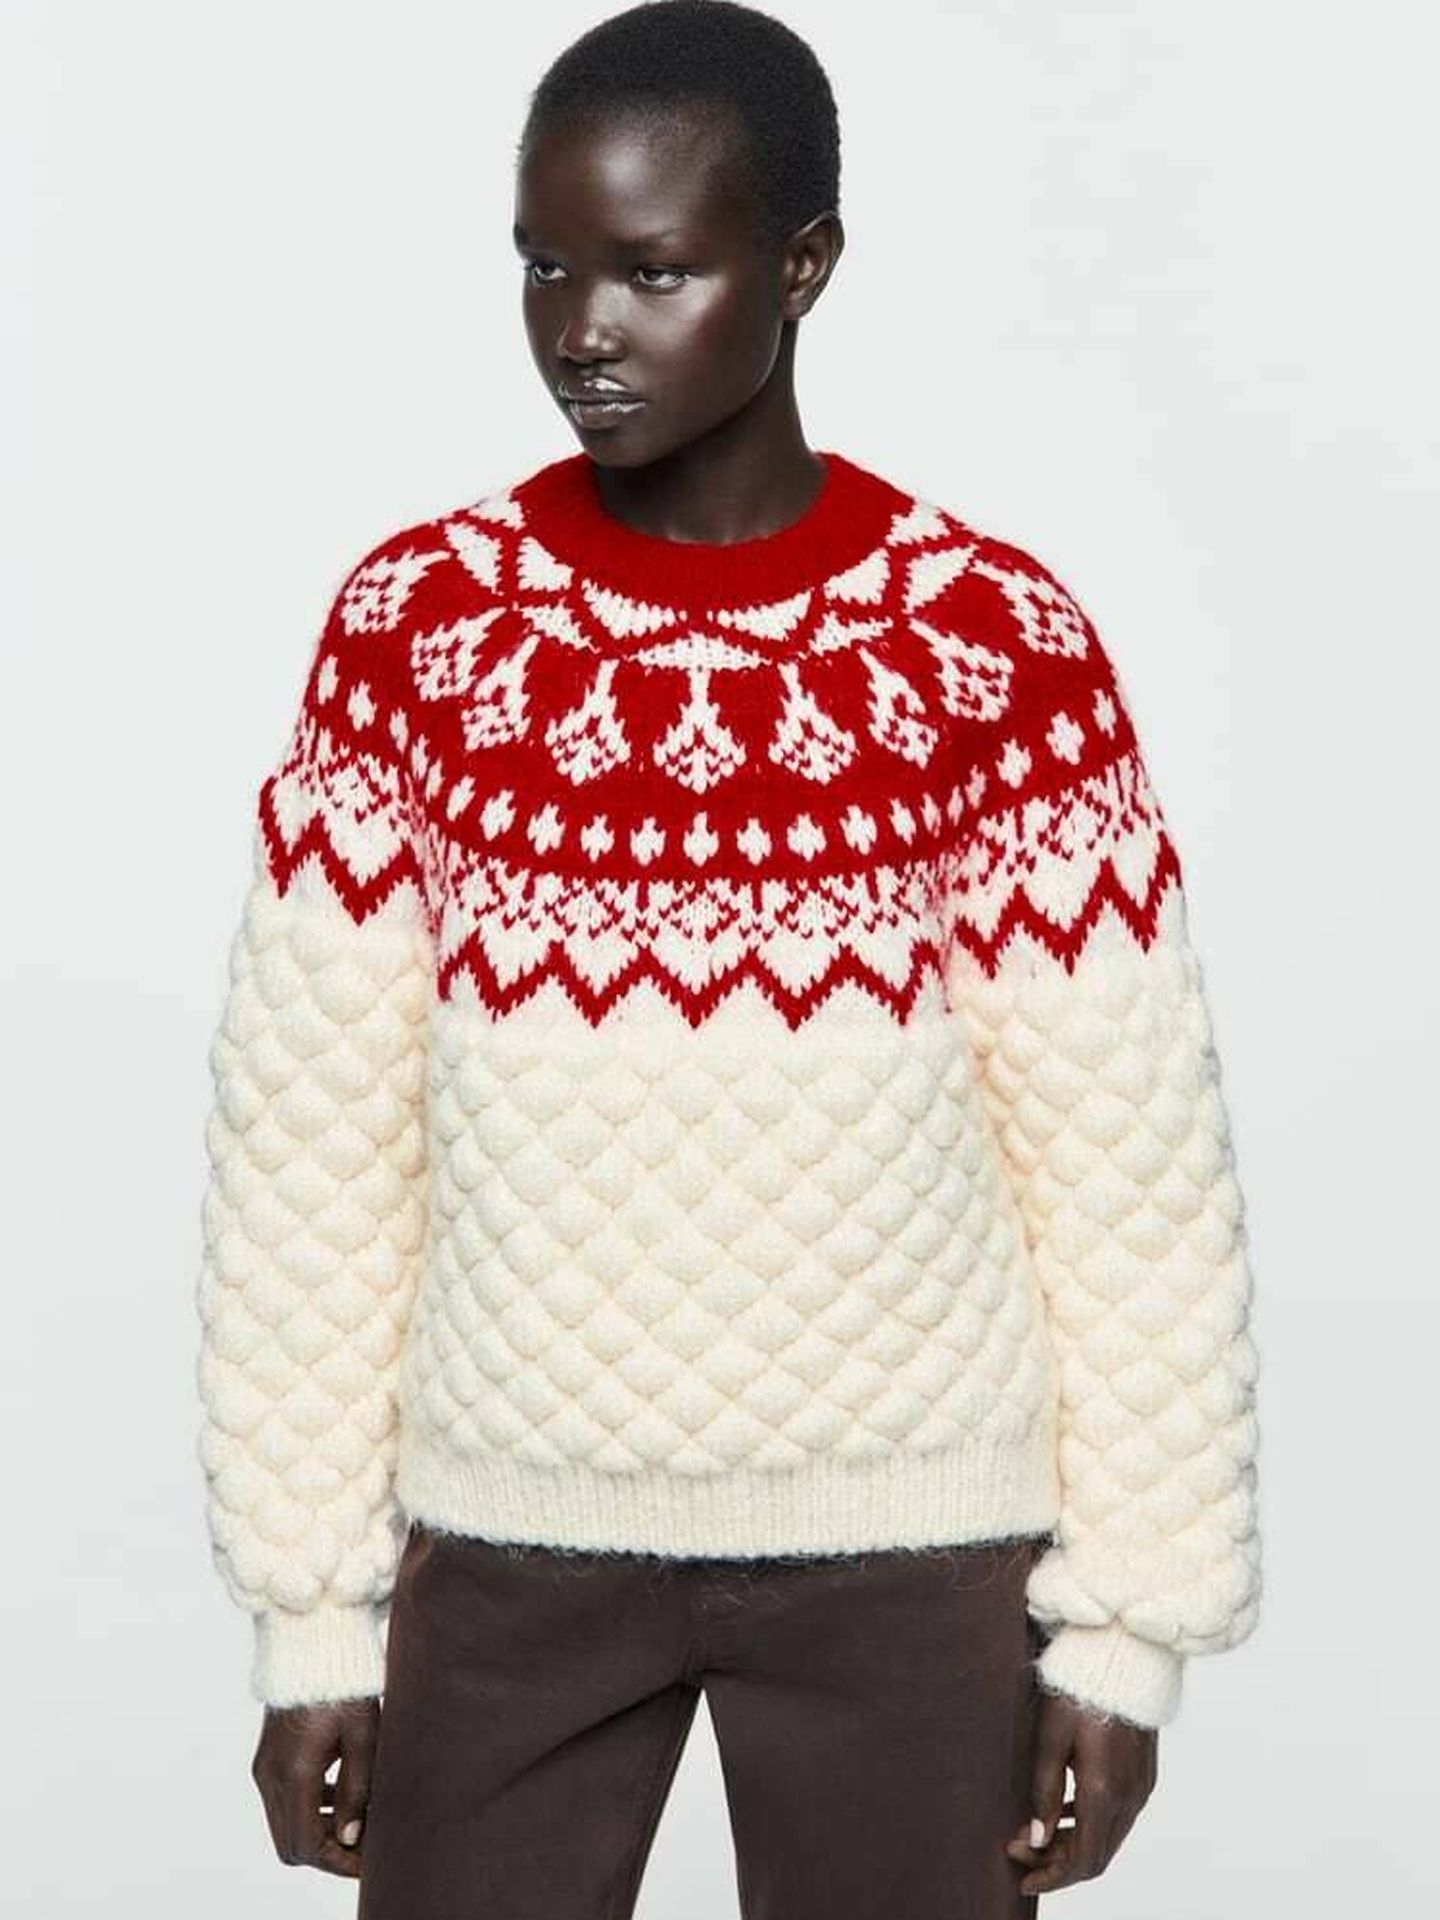 Un jersey navideño de Zara. (Cortesía)